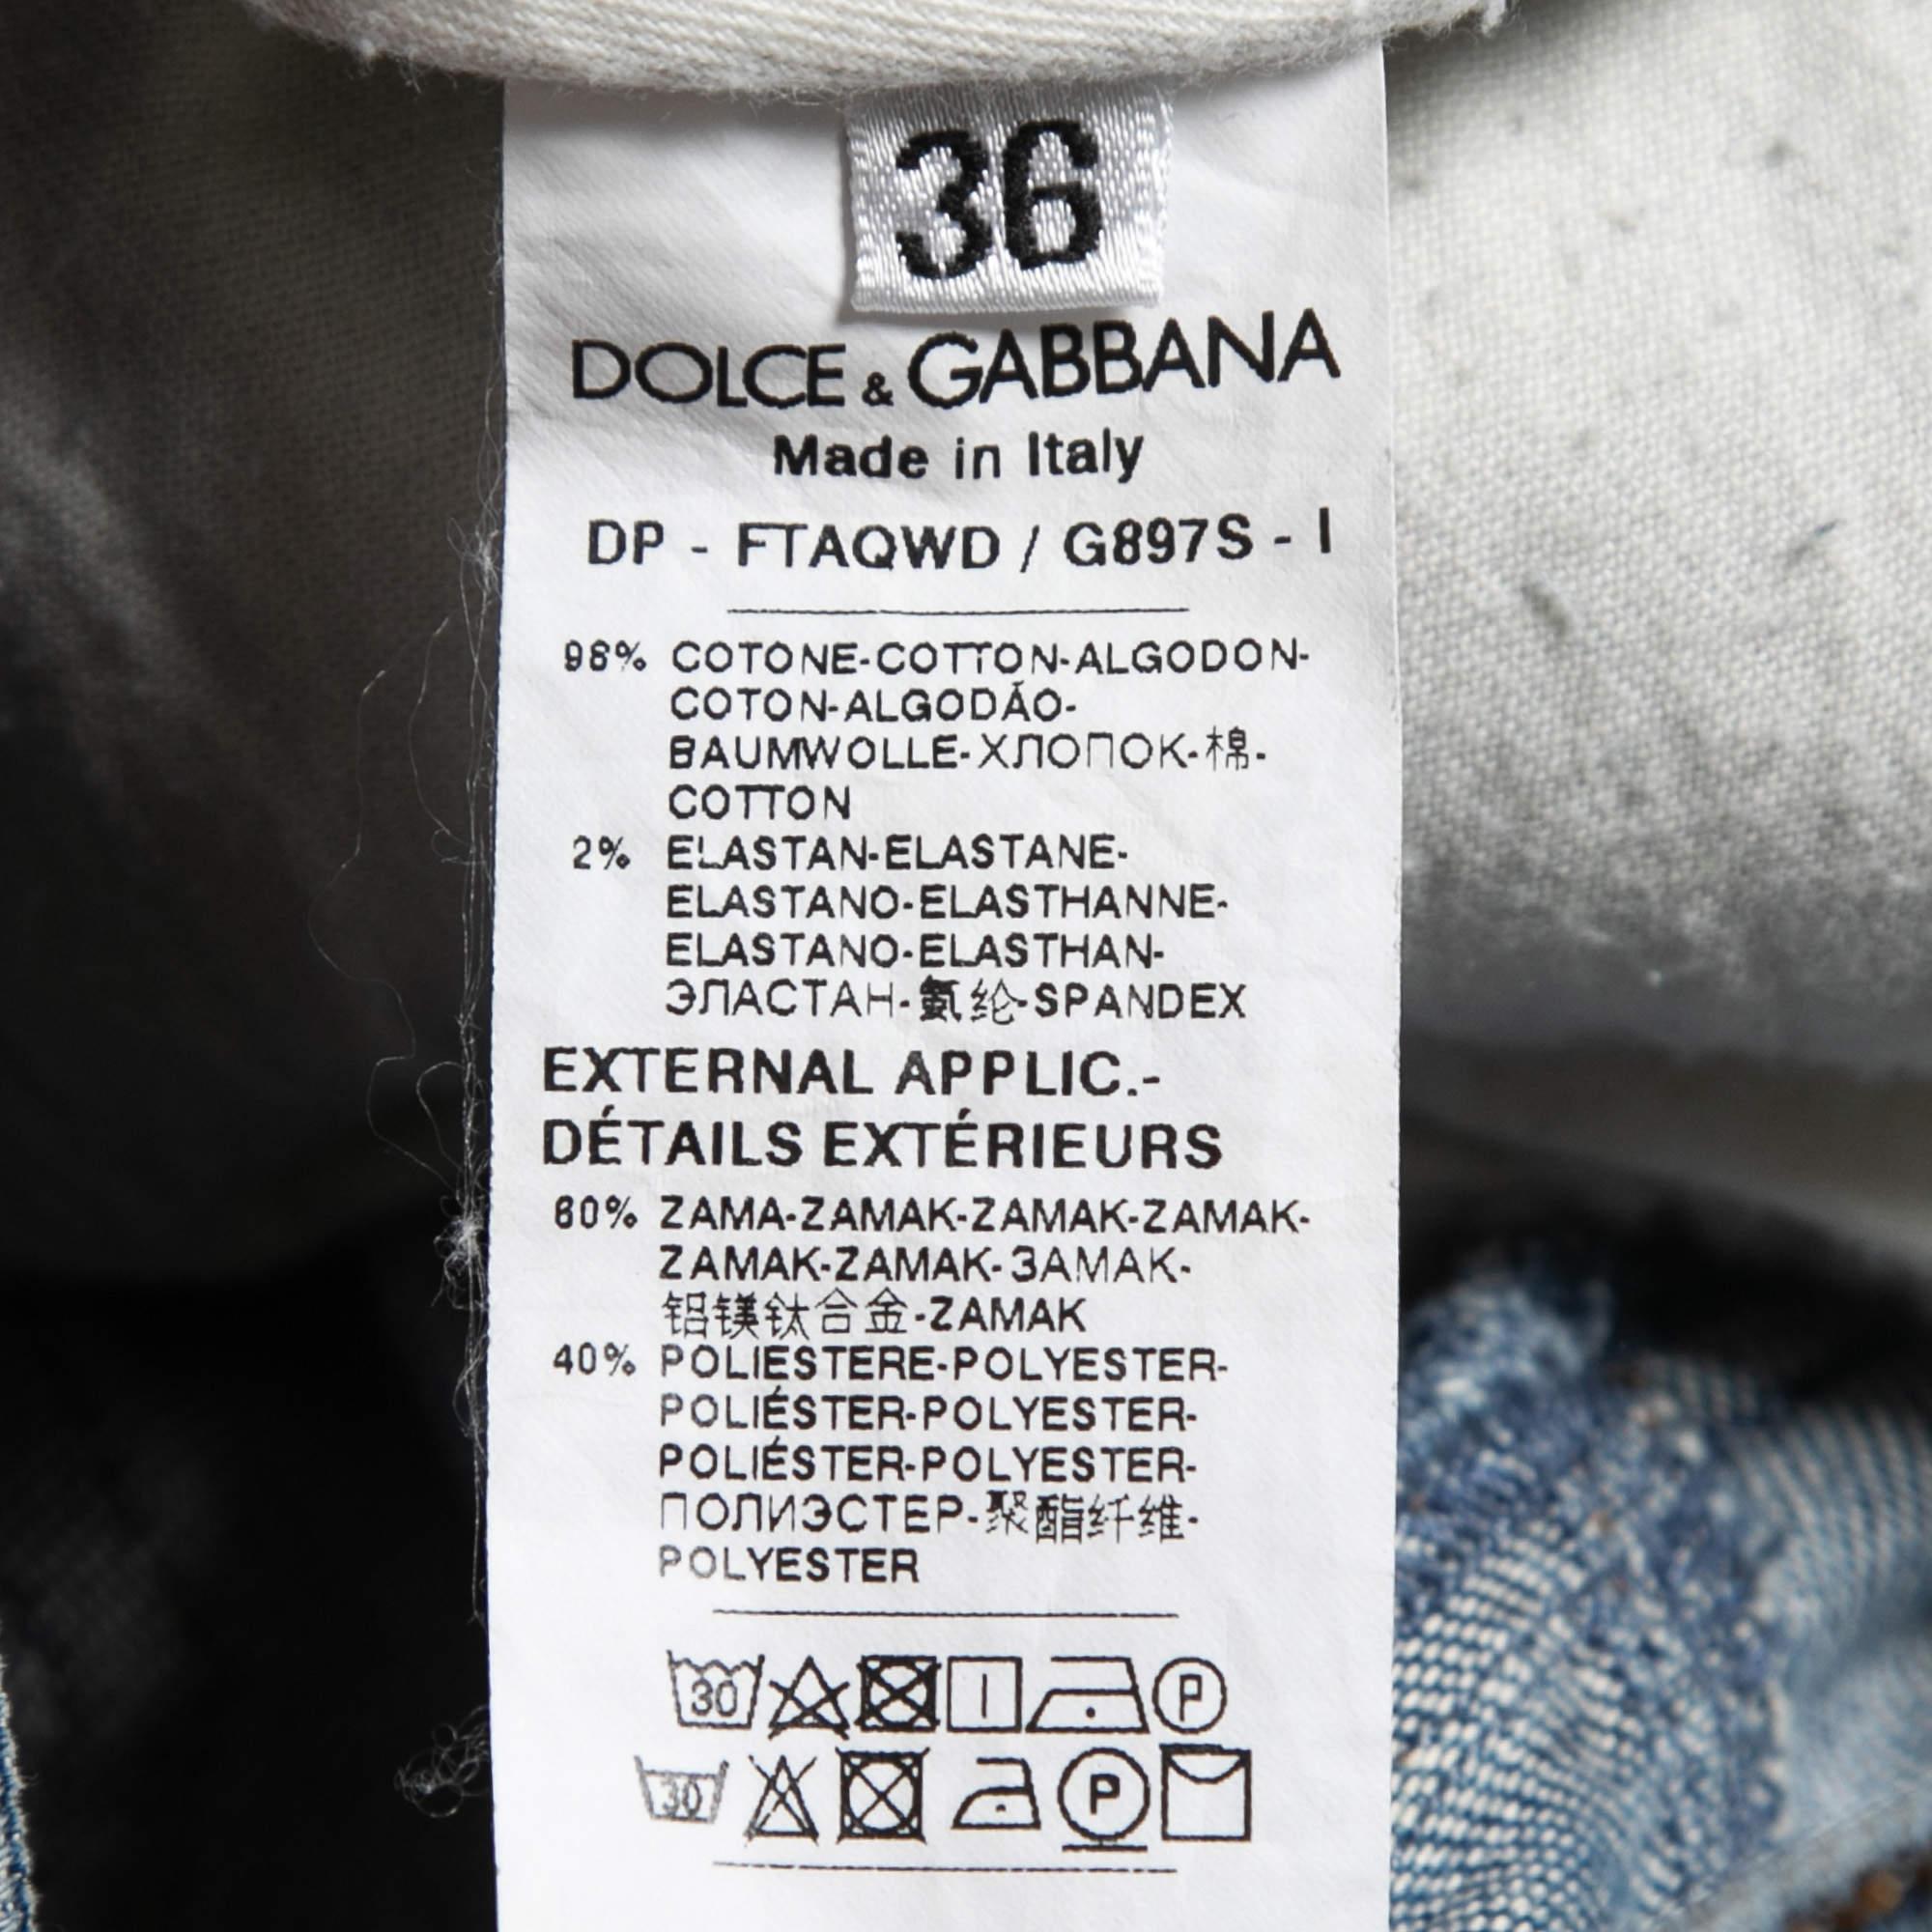 Dolce & Gabbana Blue Distressed Denim Pretty Skinny Jeans XS Waist 26